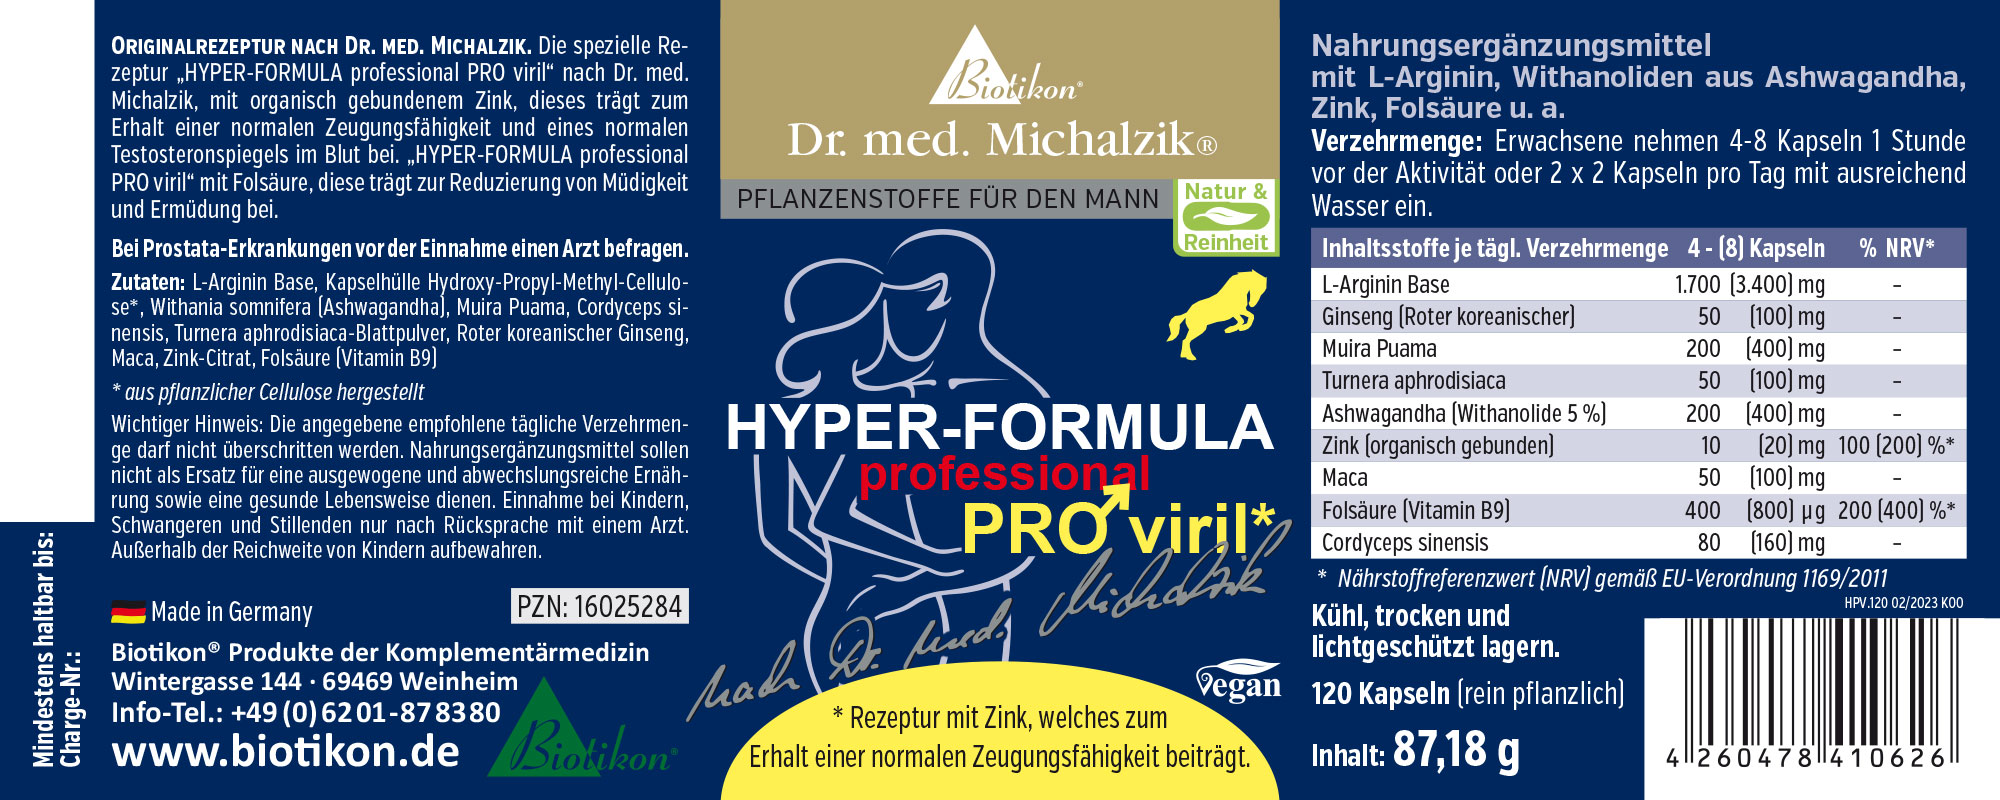 Hyper Formula PRO viril nach Dr. med. Michalzik